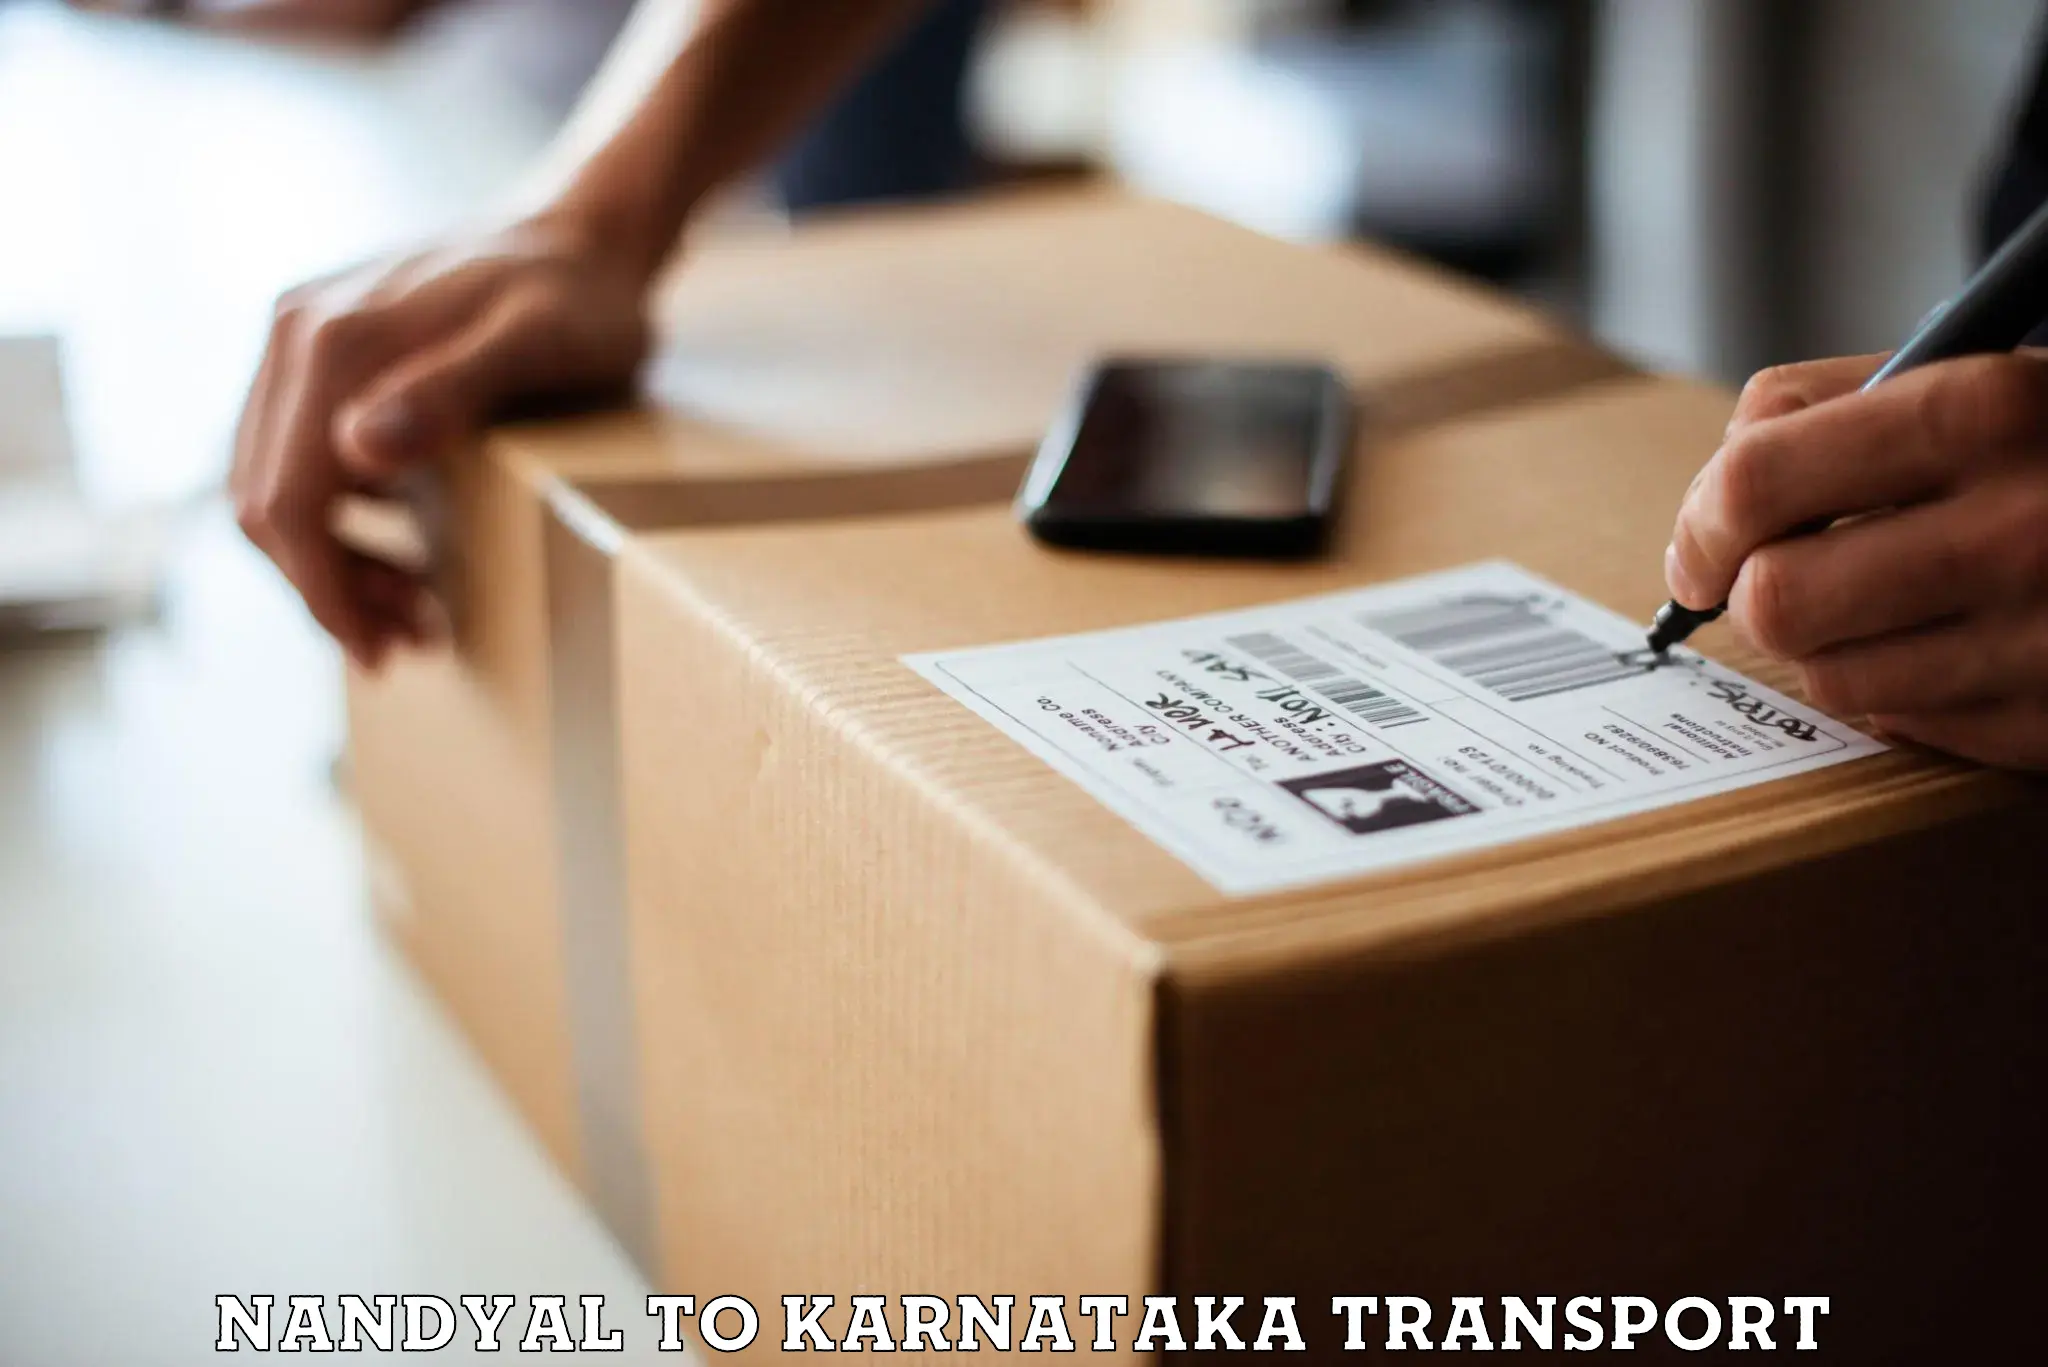 Nearest transport service Nandyal to Karnataka